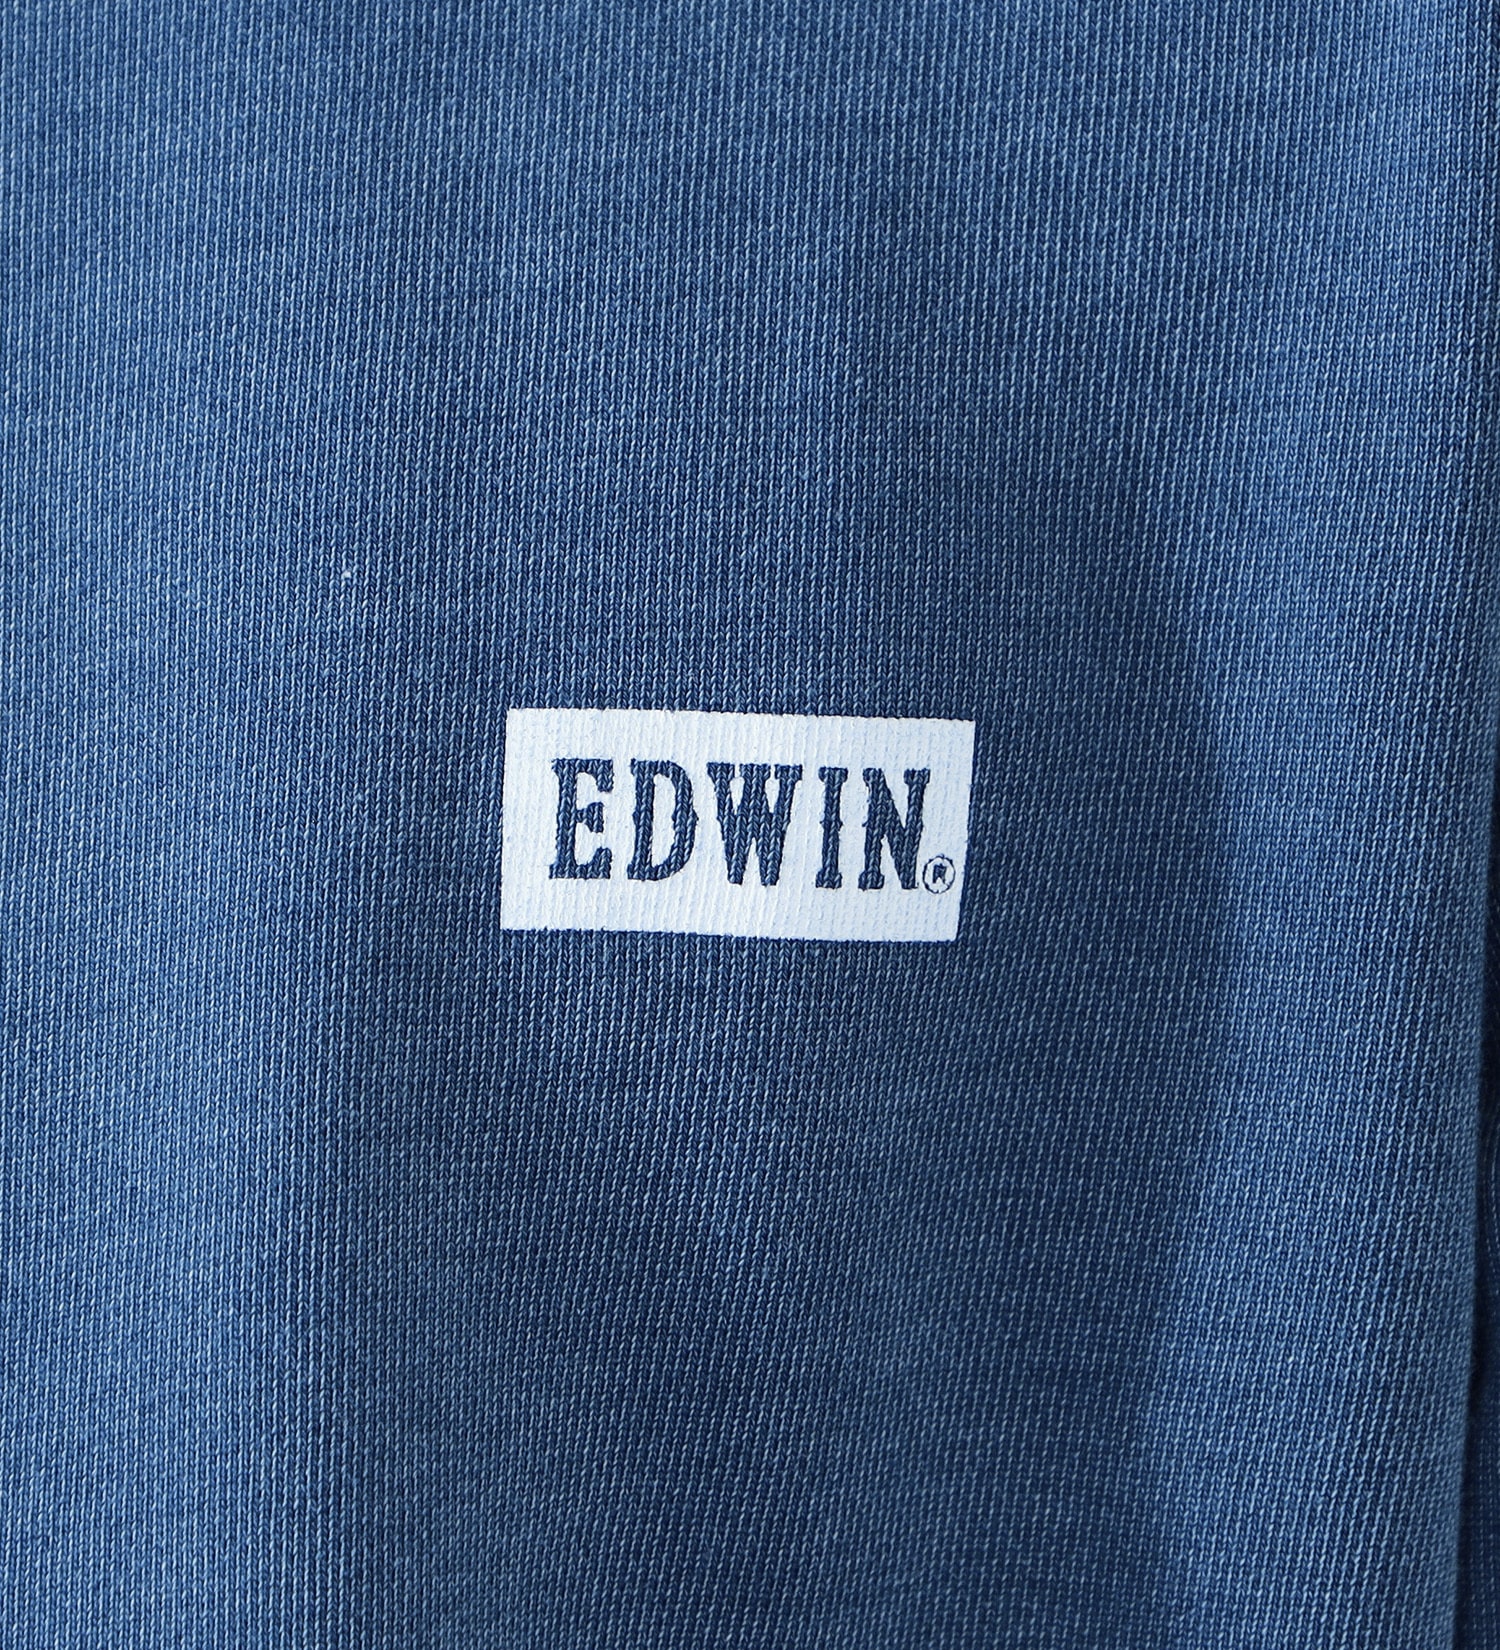 EDWIN(エドウイン)のクルーネックワンポイントロゴスウェット【アウトレット店舗・WEB限定】|トップス/スウェット/メンズ|ライトブルー